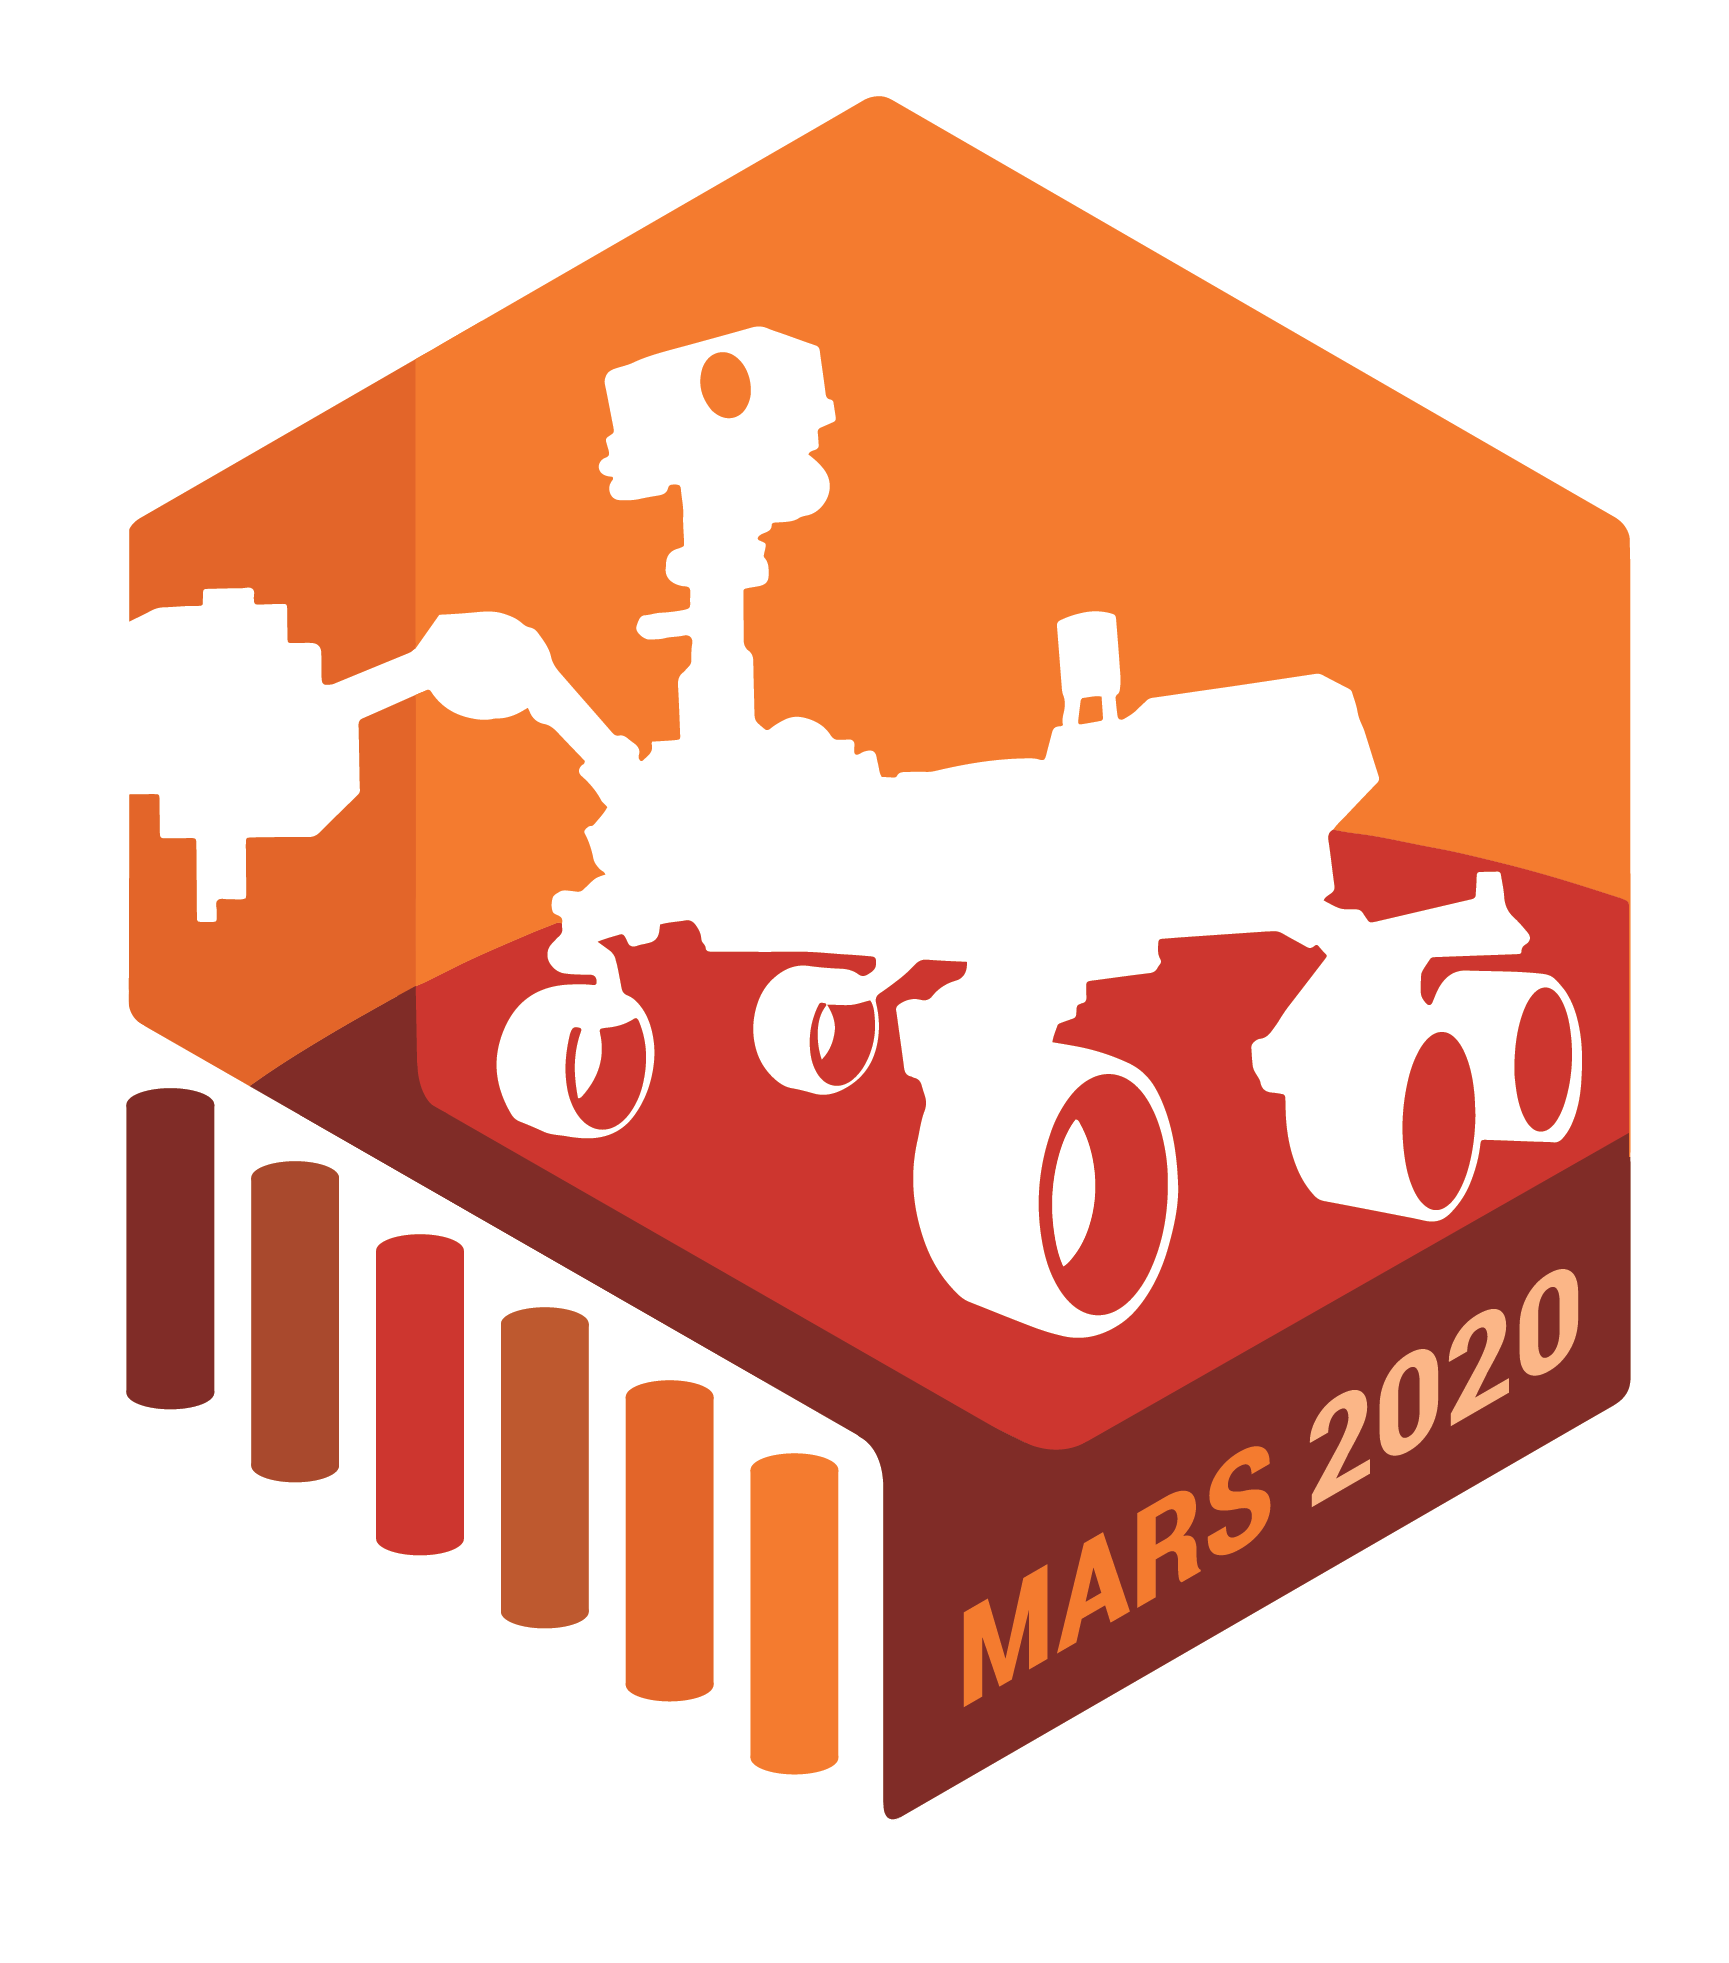 Марс-2020